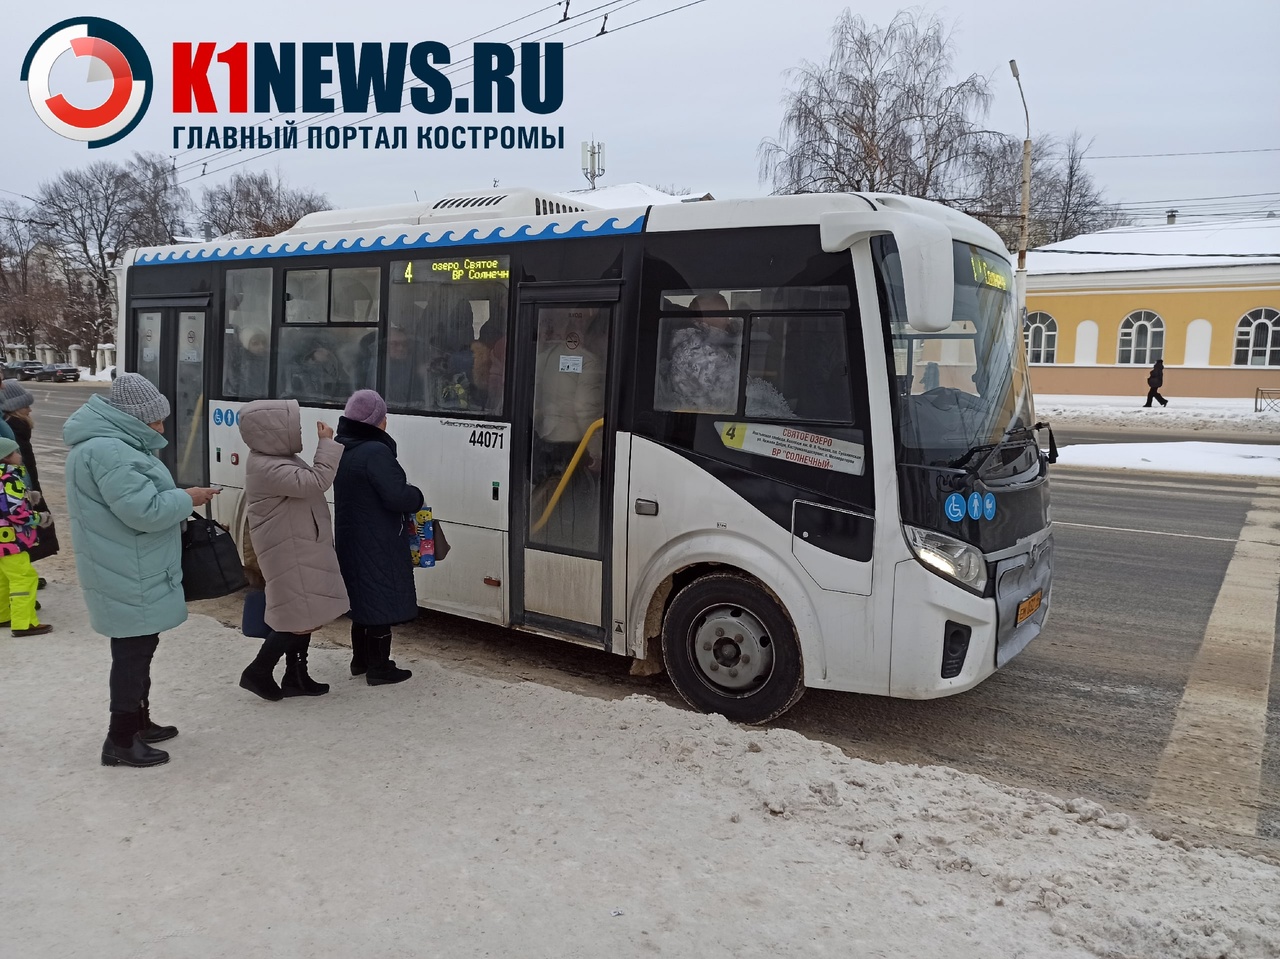 Жители костромского райцентра пожаловались на нехватку автобусов